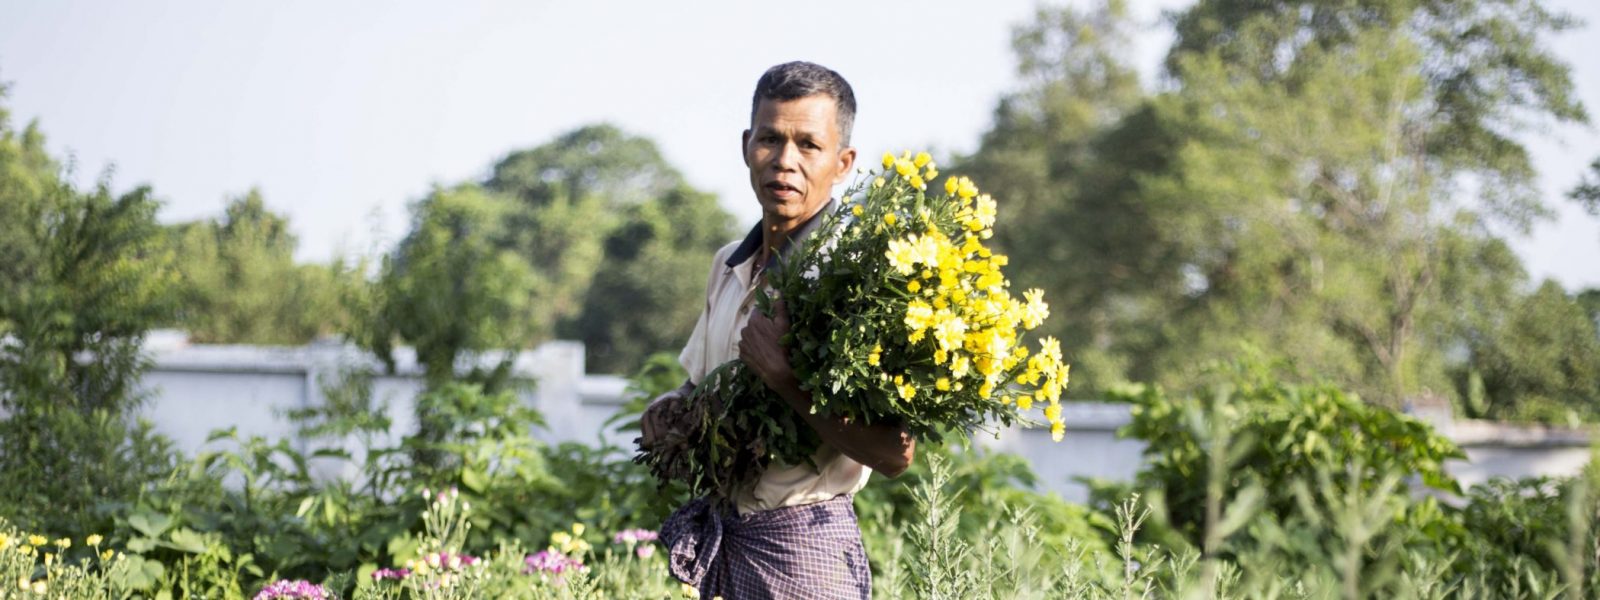 Pyin Oo Lwin - fields of flowers - Myanmar - Sampan Travel